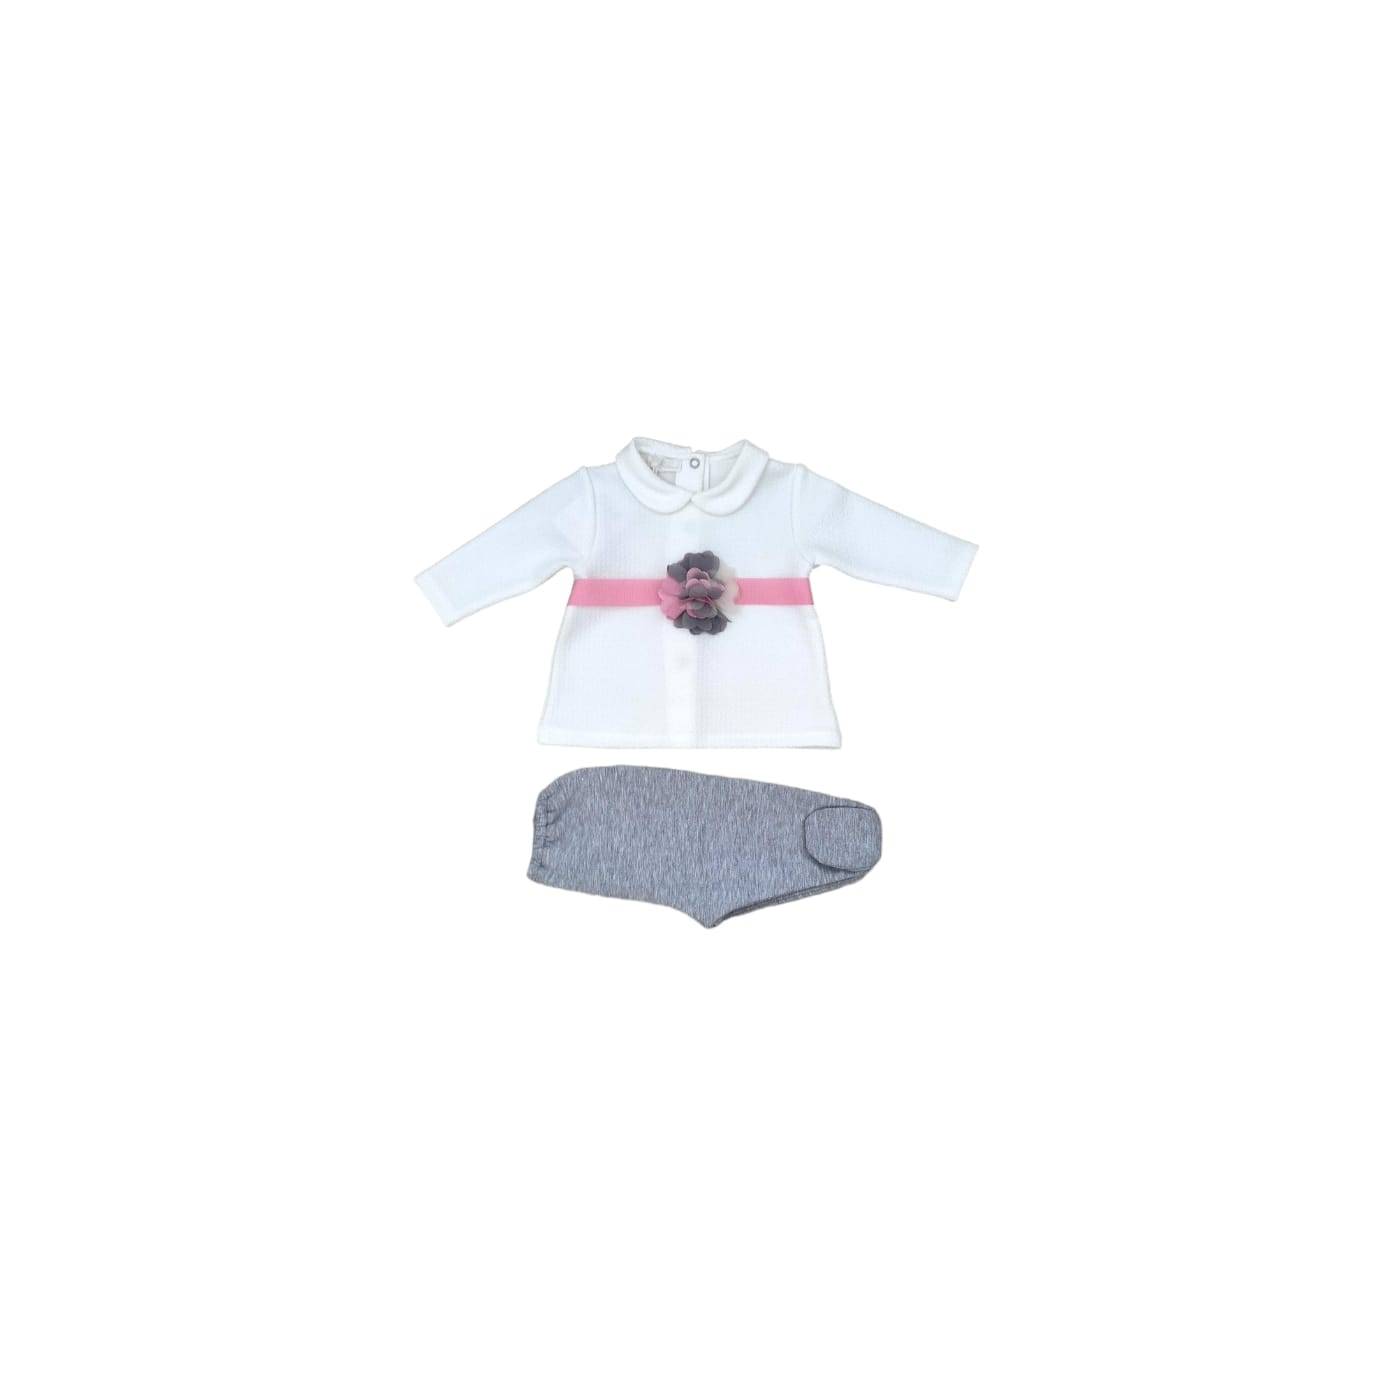 Coperta neonata Ninnaoh - Le Chicche